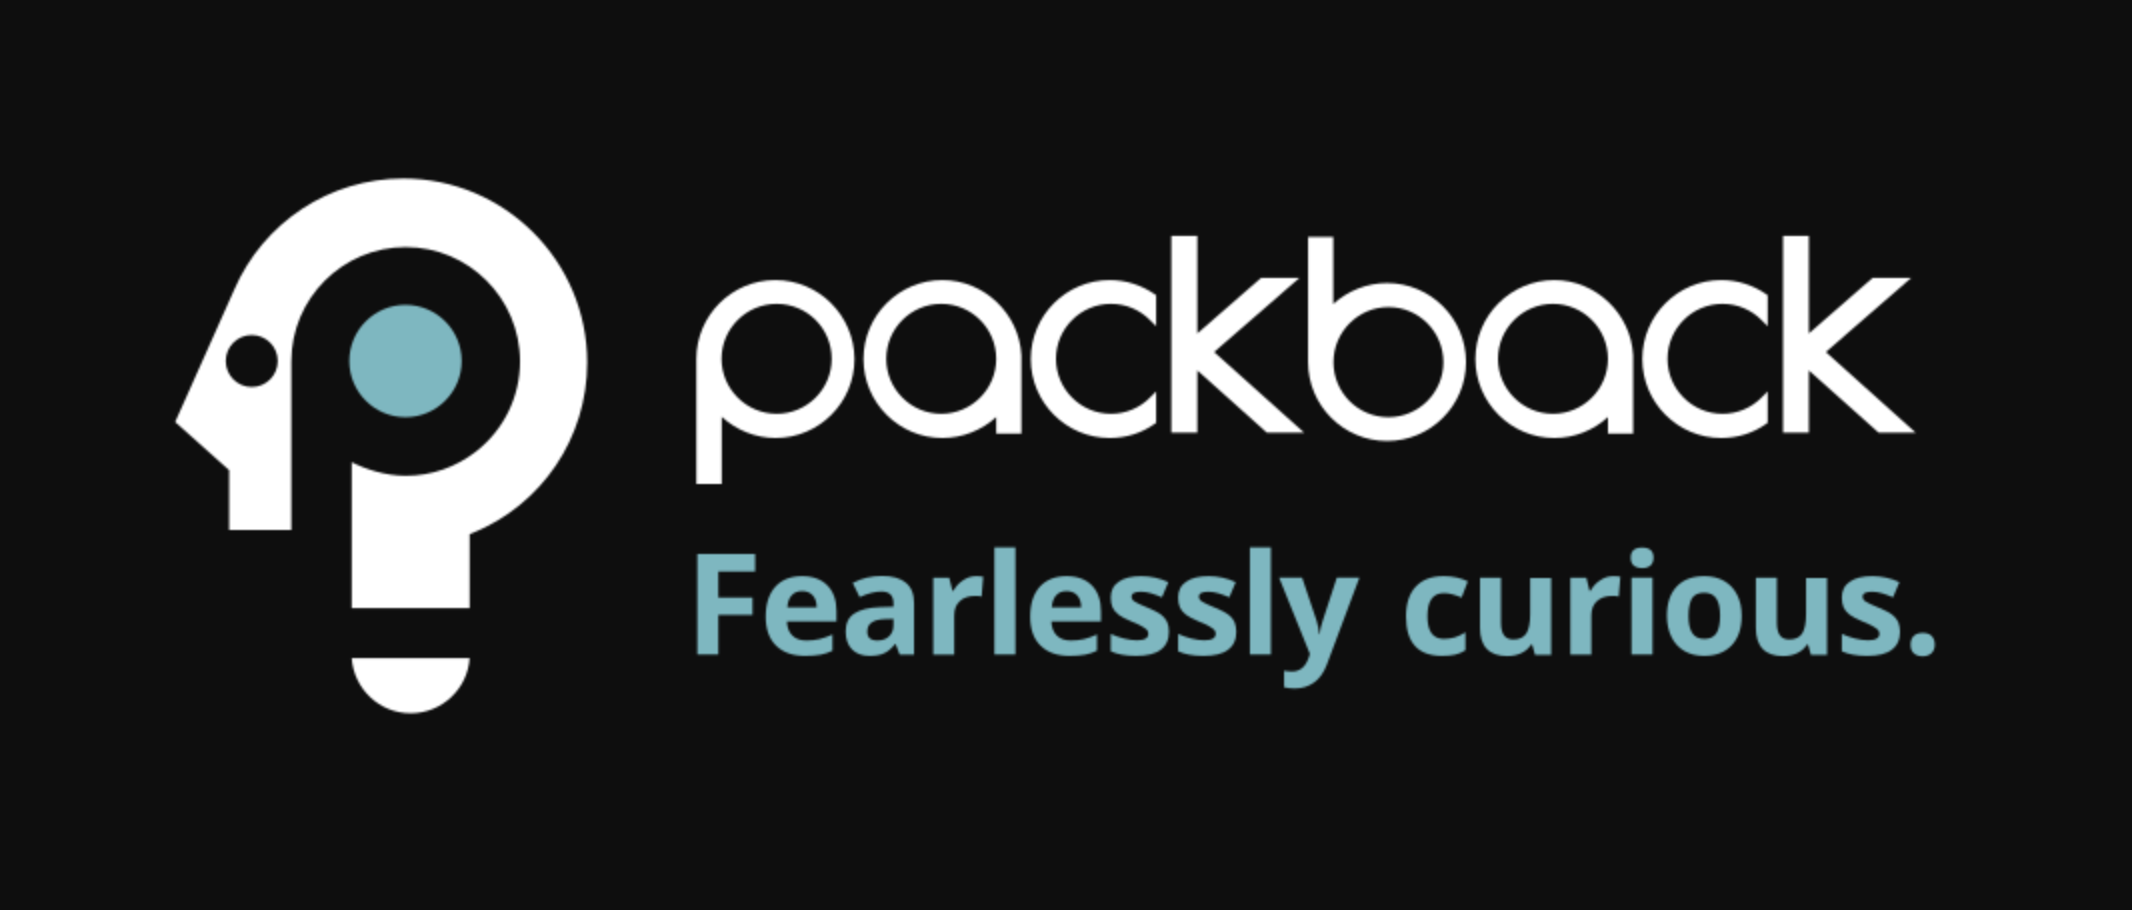 Packback logo